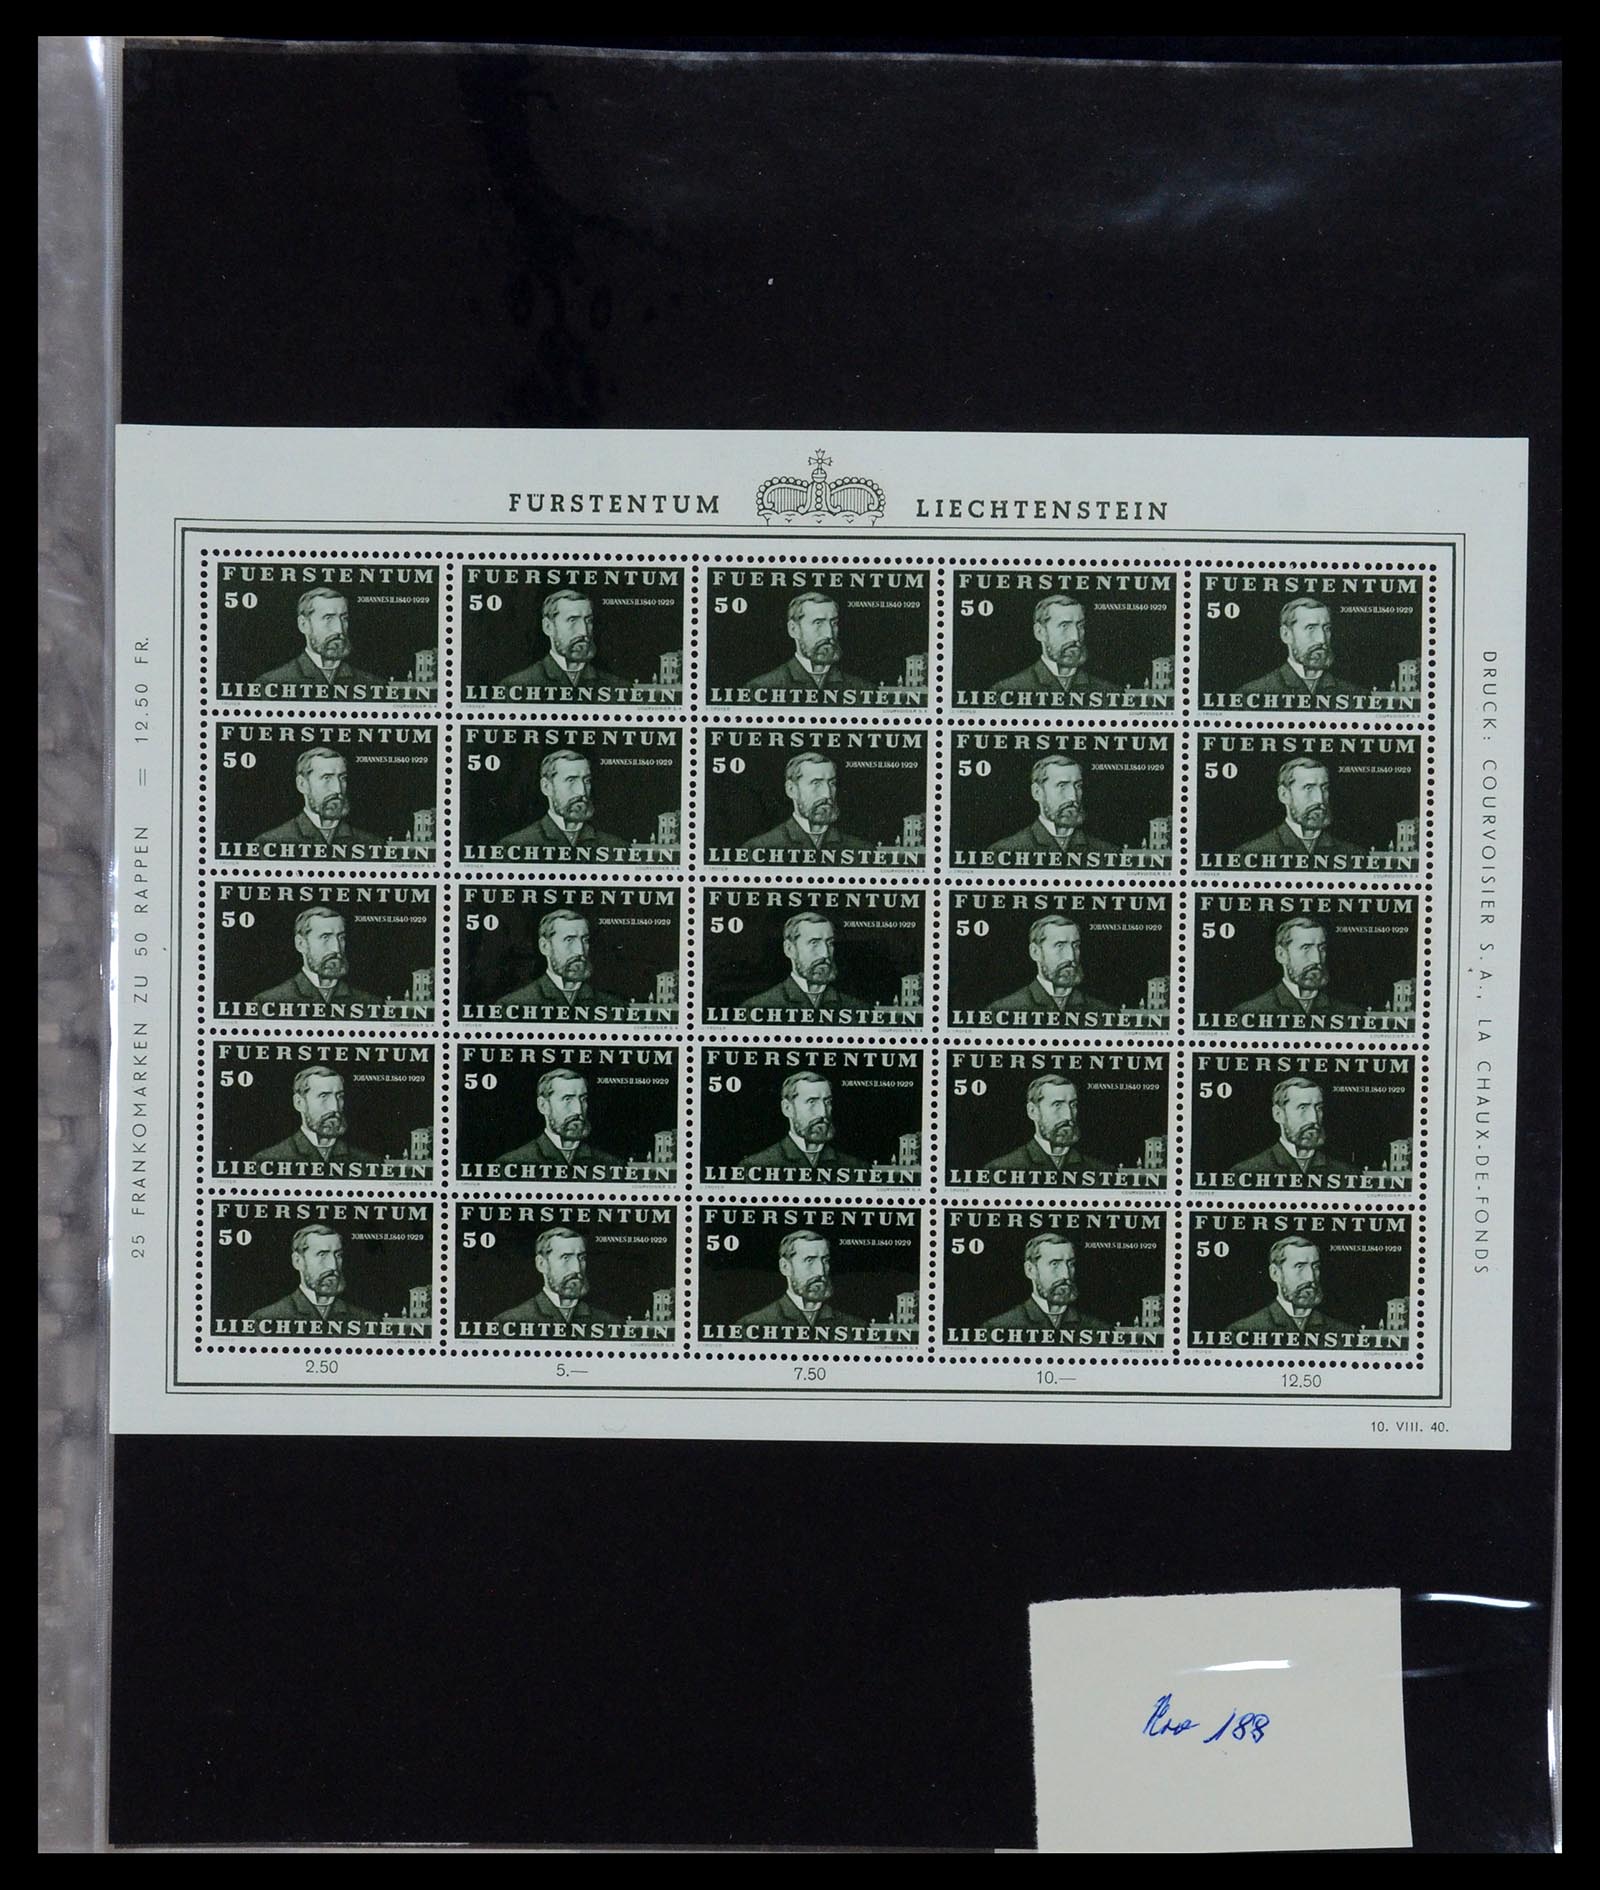 36280 011 - Stamp collection 36280 Liechtenstein souvenir sheets and sheetlets 1934-